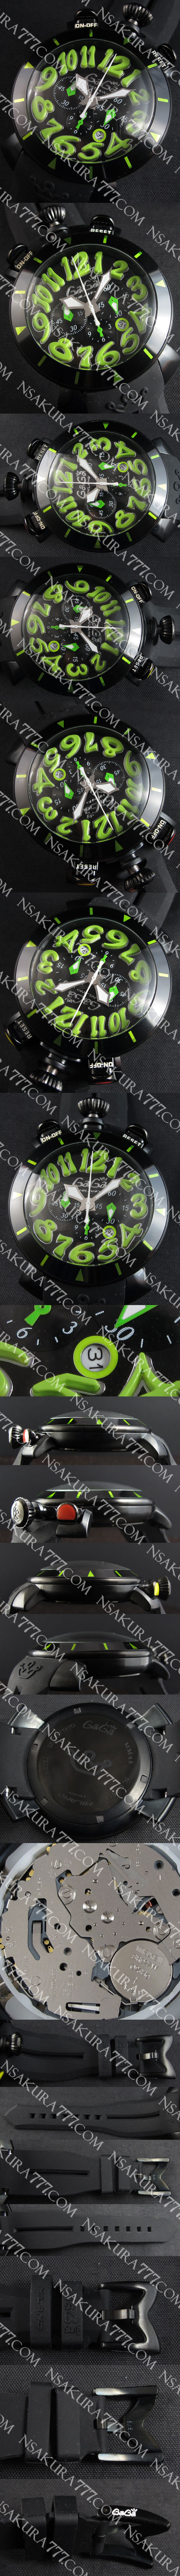 優等商品ガガ ミラノ レディース腕時計(ライトブルー)